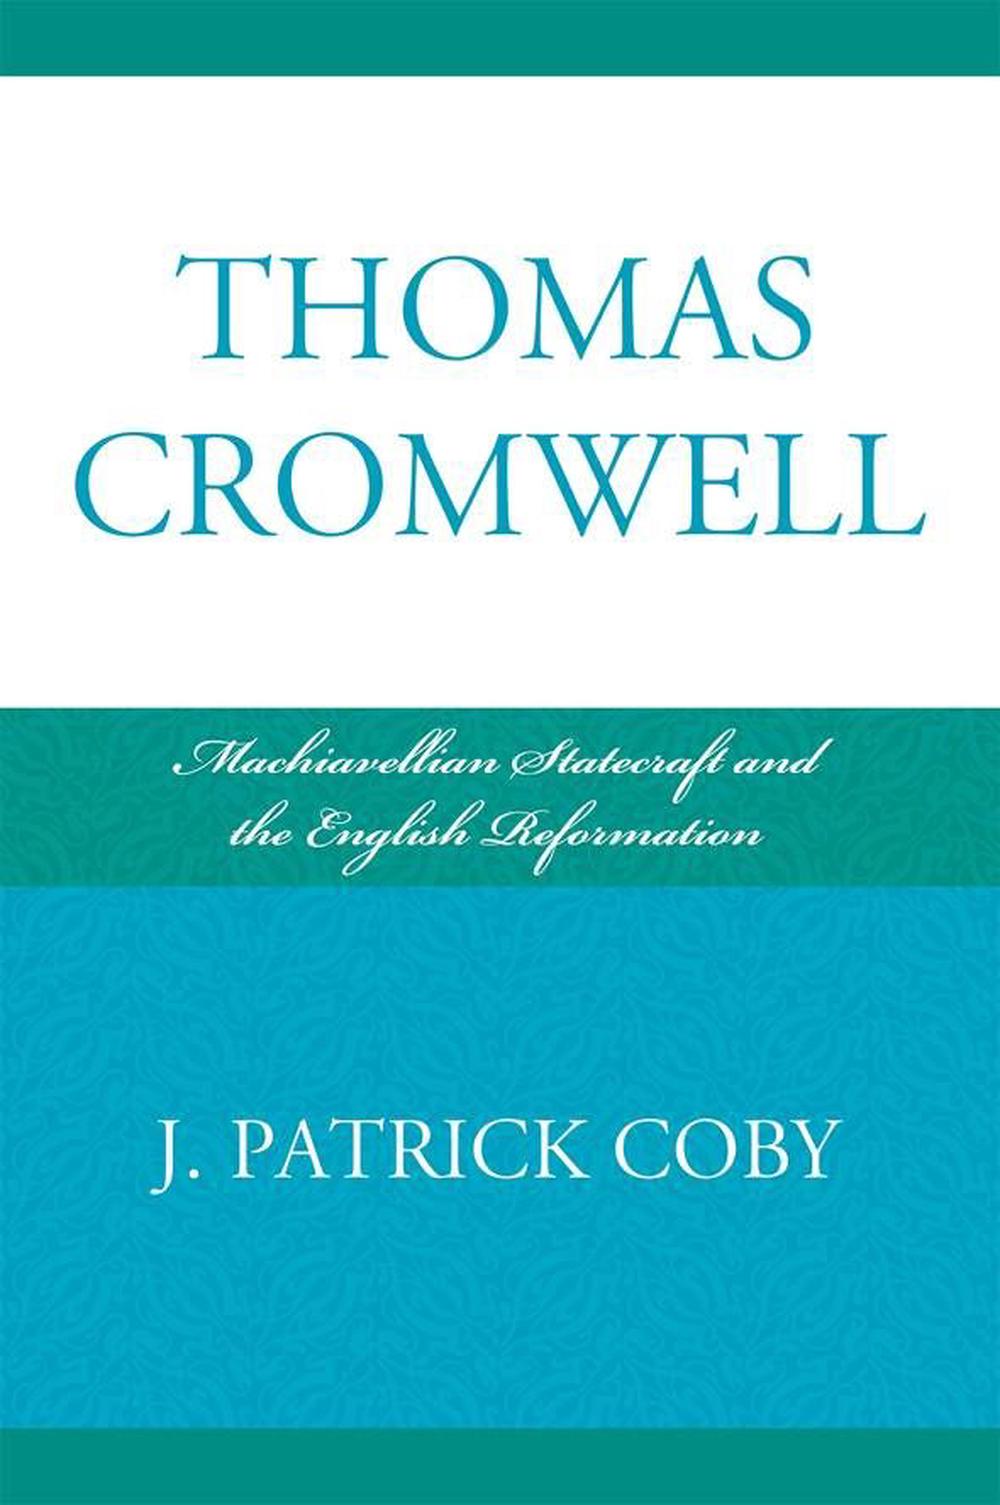 Thomas Cromwell: Machiavellistische Staatskunst und die englische Reformation von Patrick - Patrick J. Coby